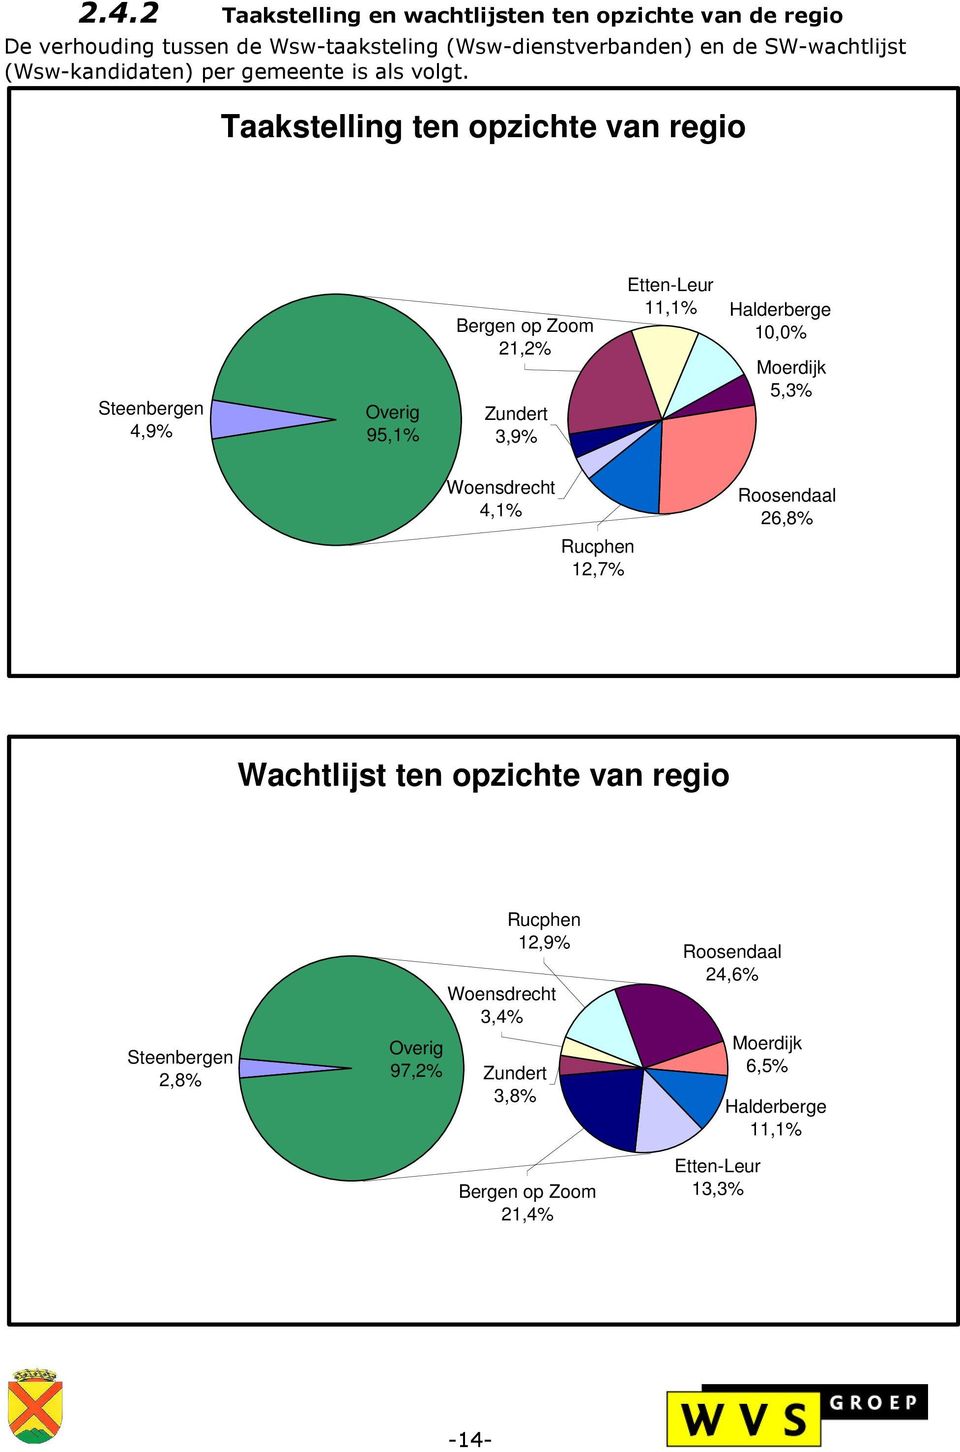 Taakstelling ten opzichte van regio Steenbergen 4,9% Overig 95,1% Bergen op Zoom 21,2% Zundert 3,9% Etten-Leur 11,1% Halderberge 10,0% Moerdijk